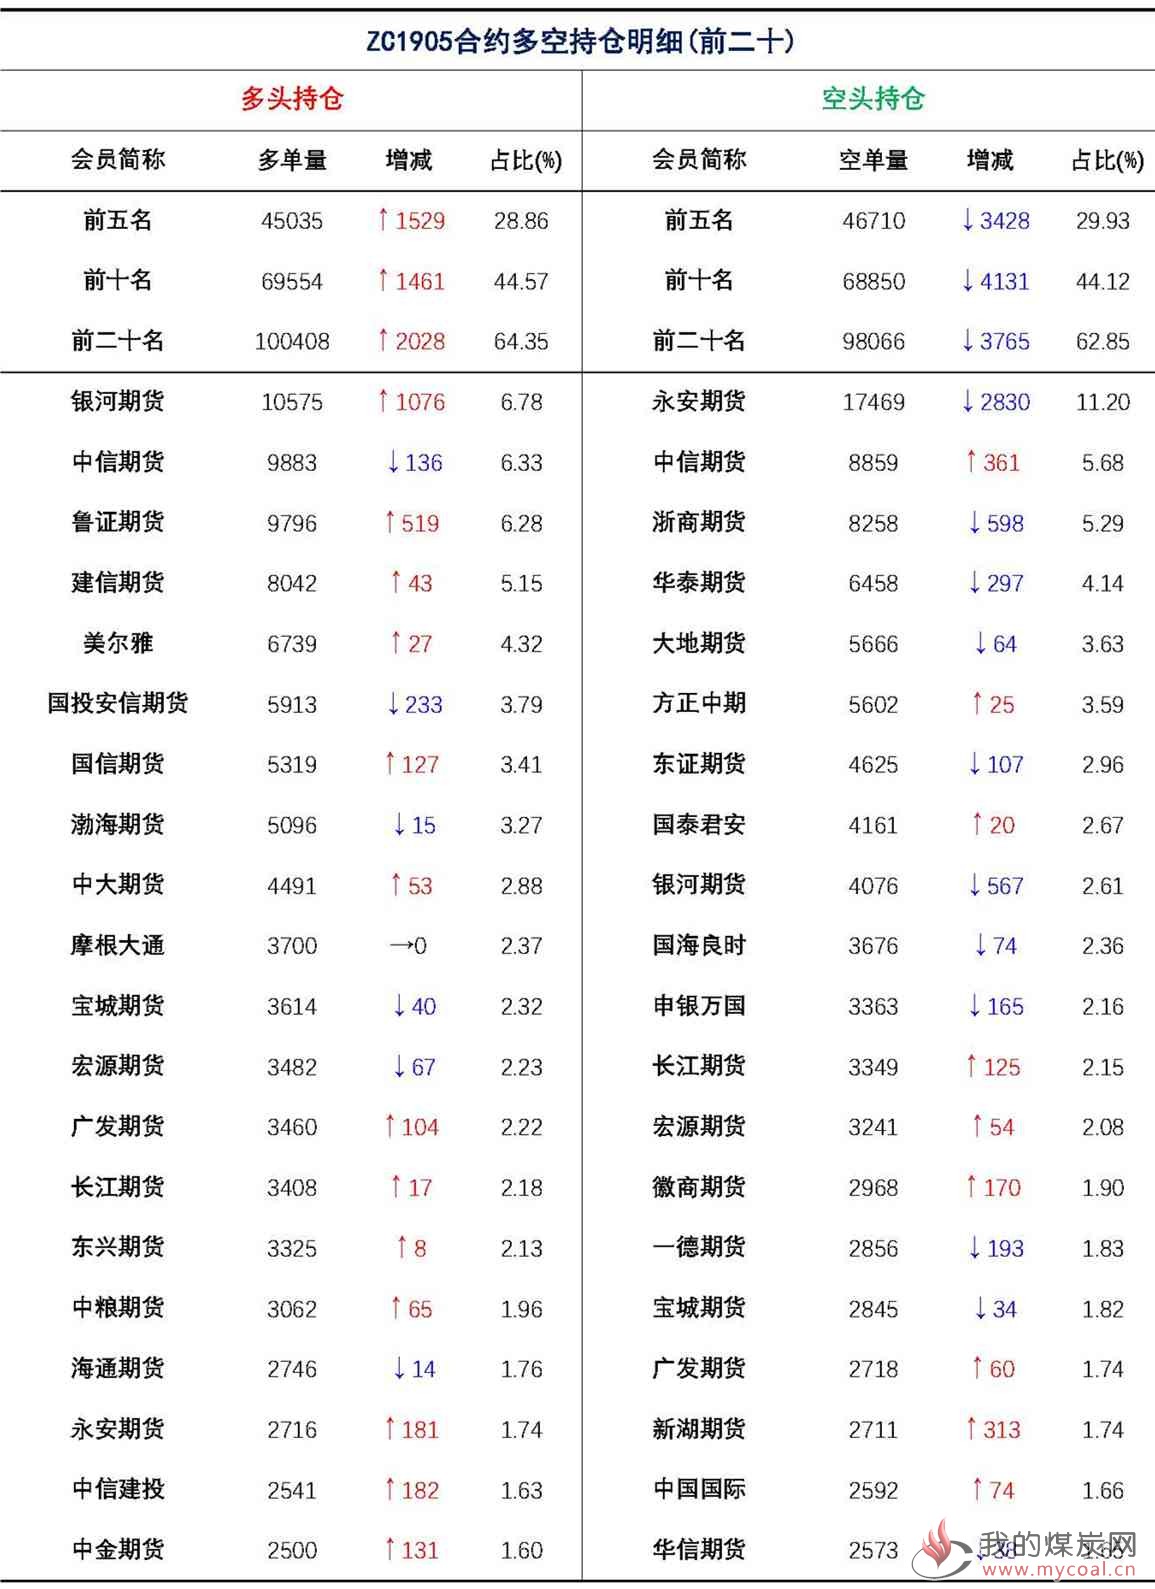 【上海煤交所】1月9日动力煤期货日报(1)_页面_09